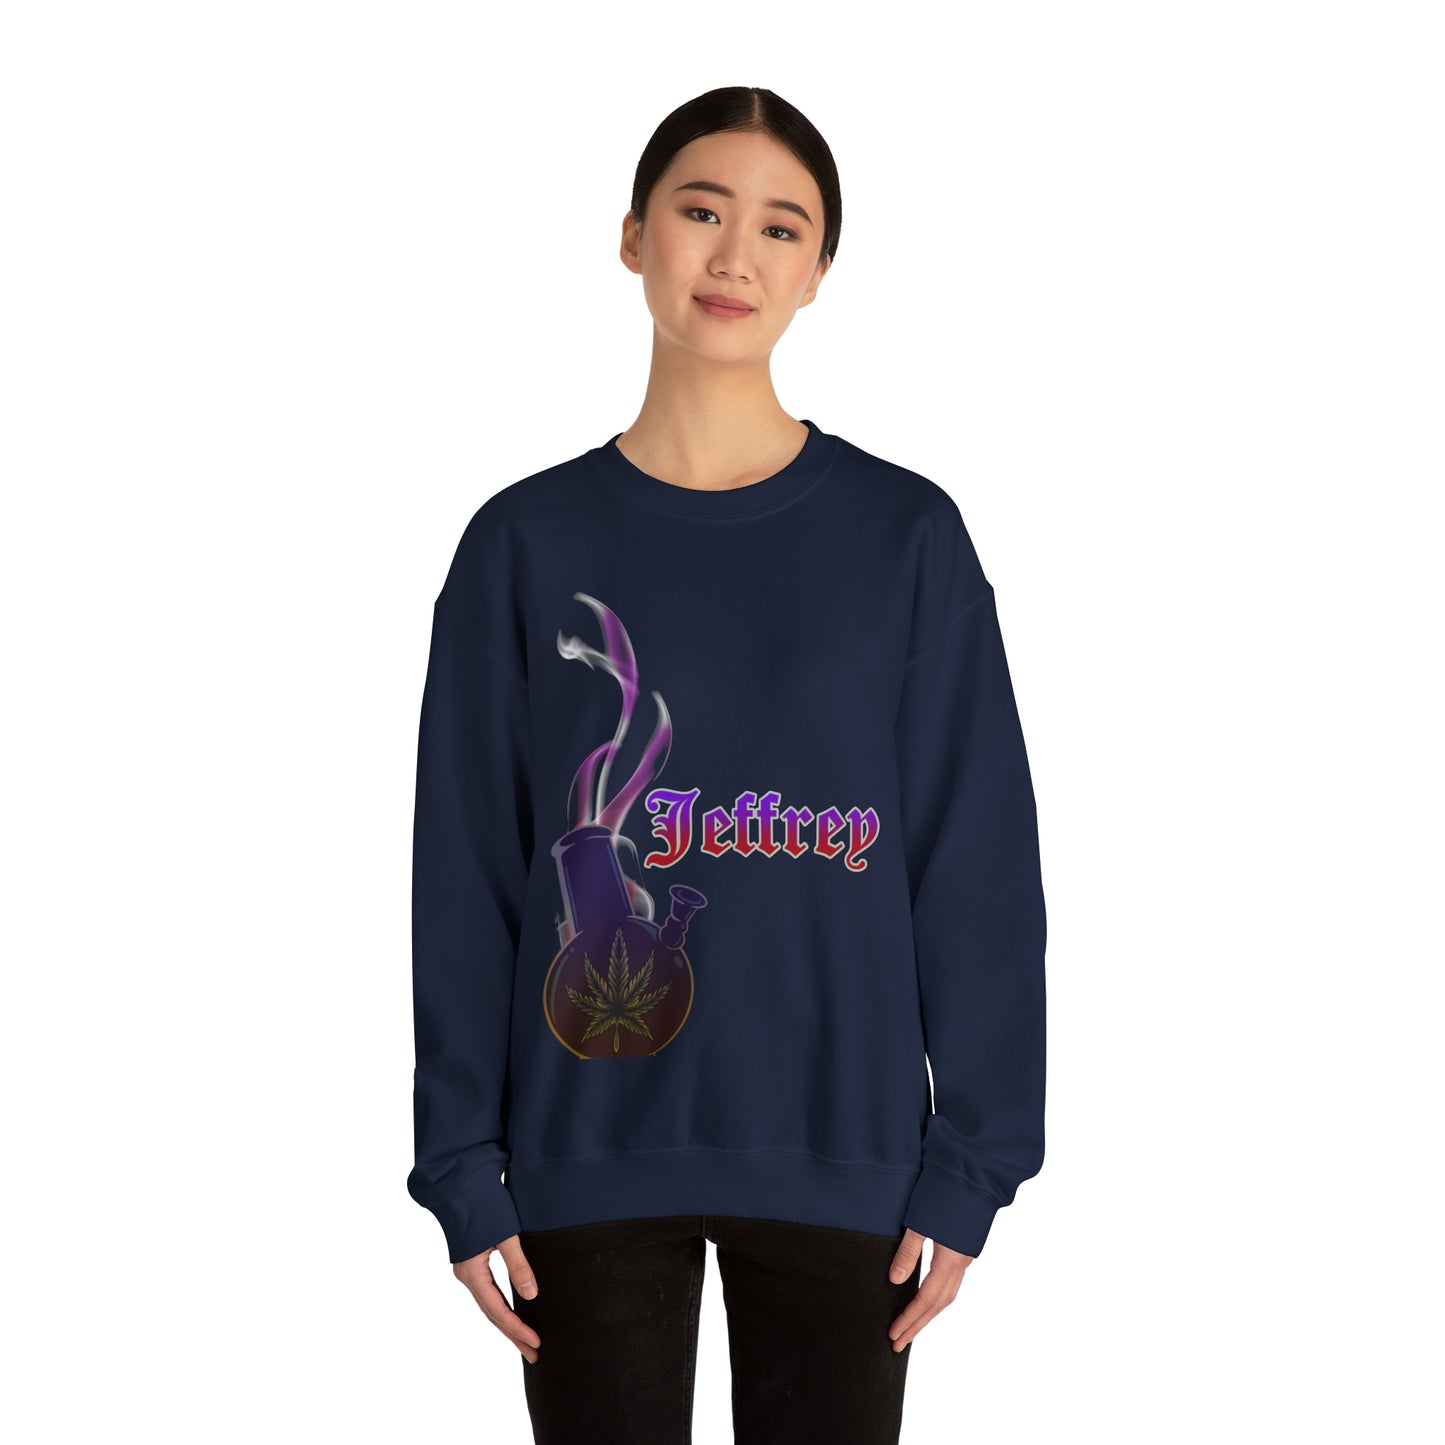 Customize sweatshirt